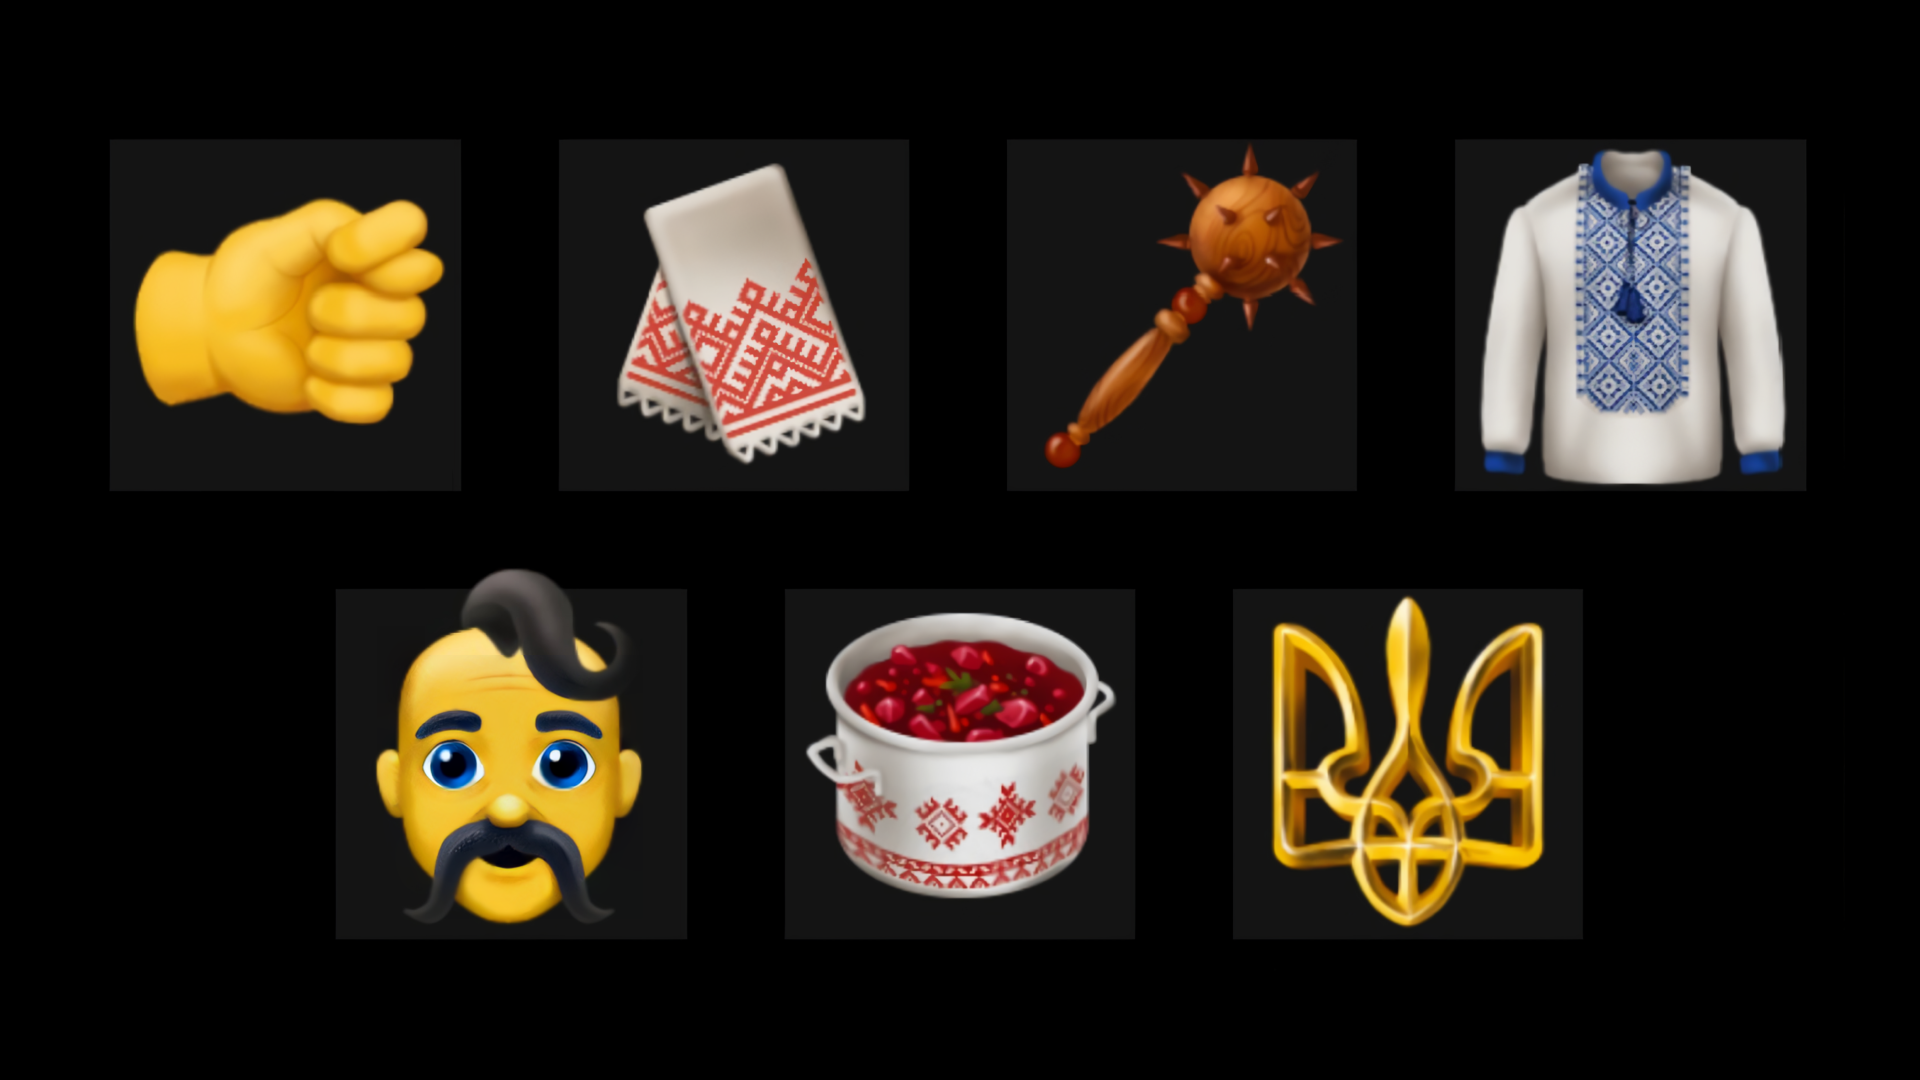 Agencja Hexagon stworzyła ukraińskie emotikony, które mogą pojawiać się na urządzeniach z Androidem i iOS